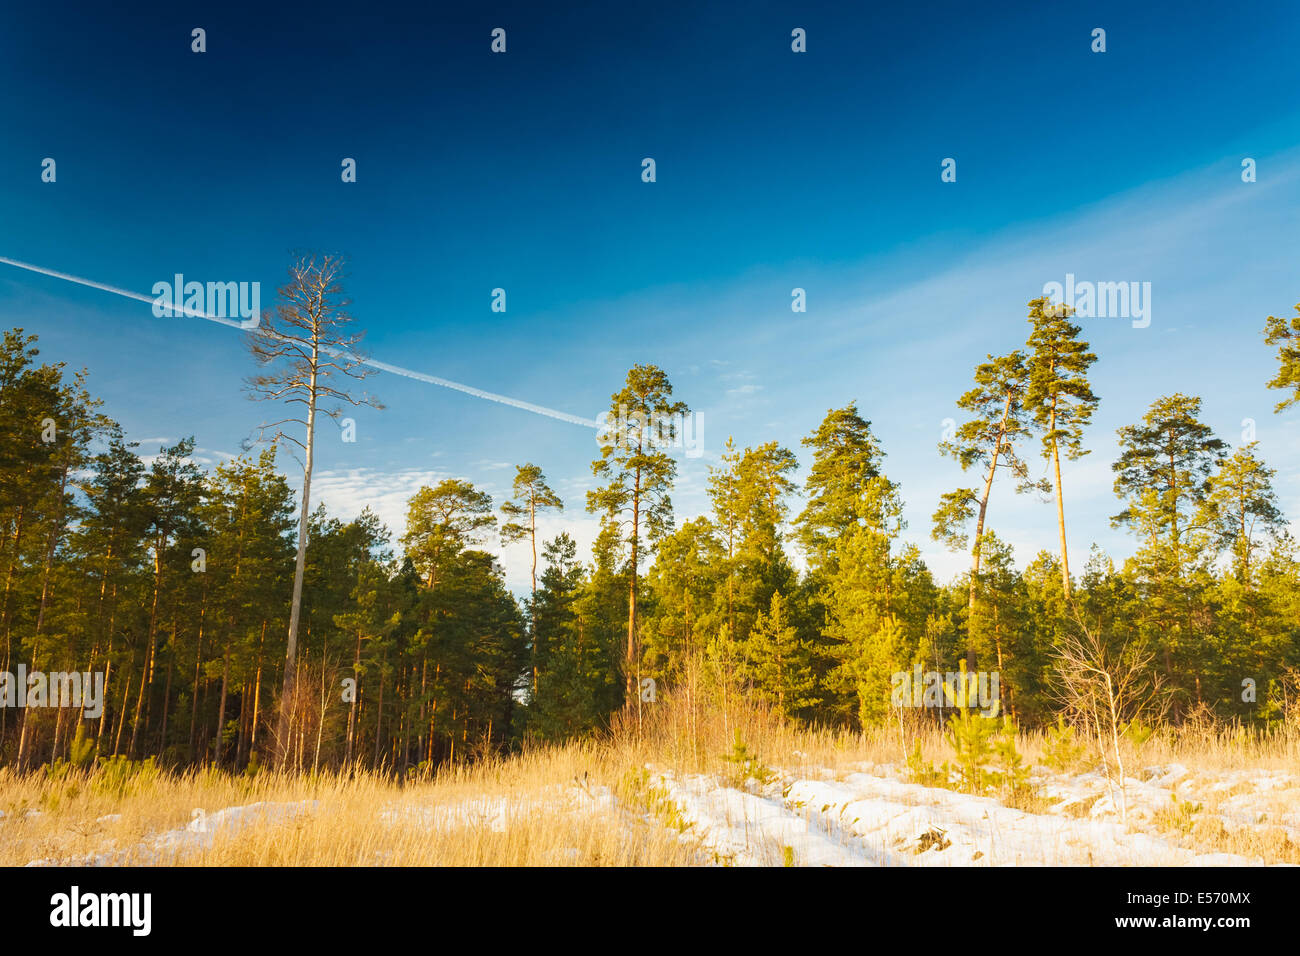 Première neige couverts l'herbe jaune sec dans la forêt. La nature russe. Banque D'Images